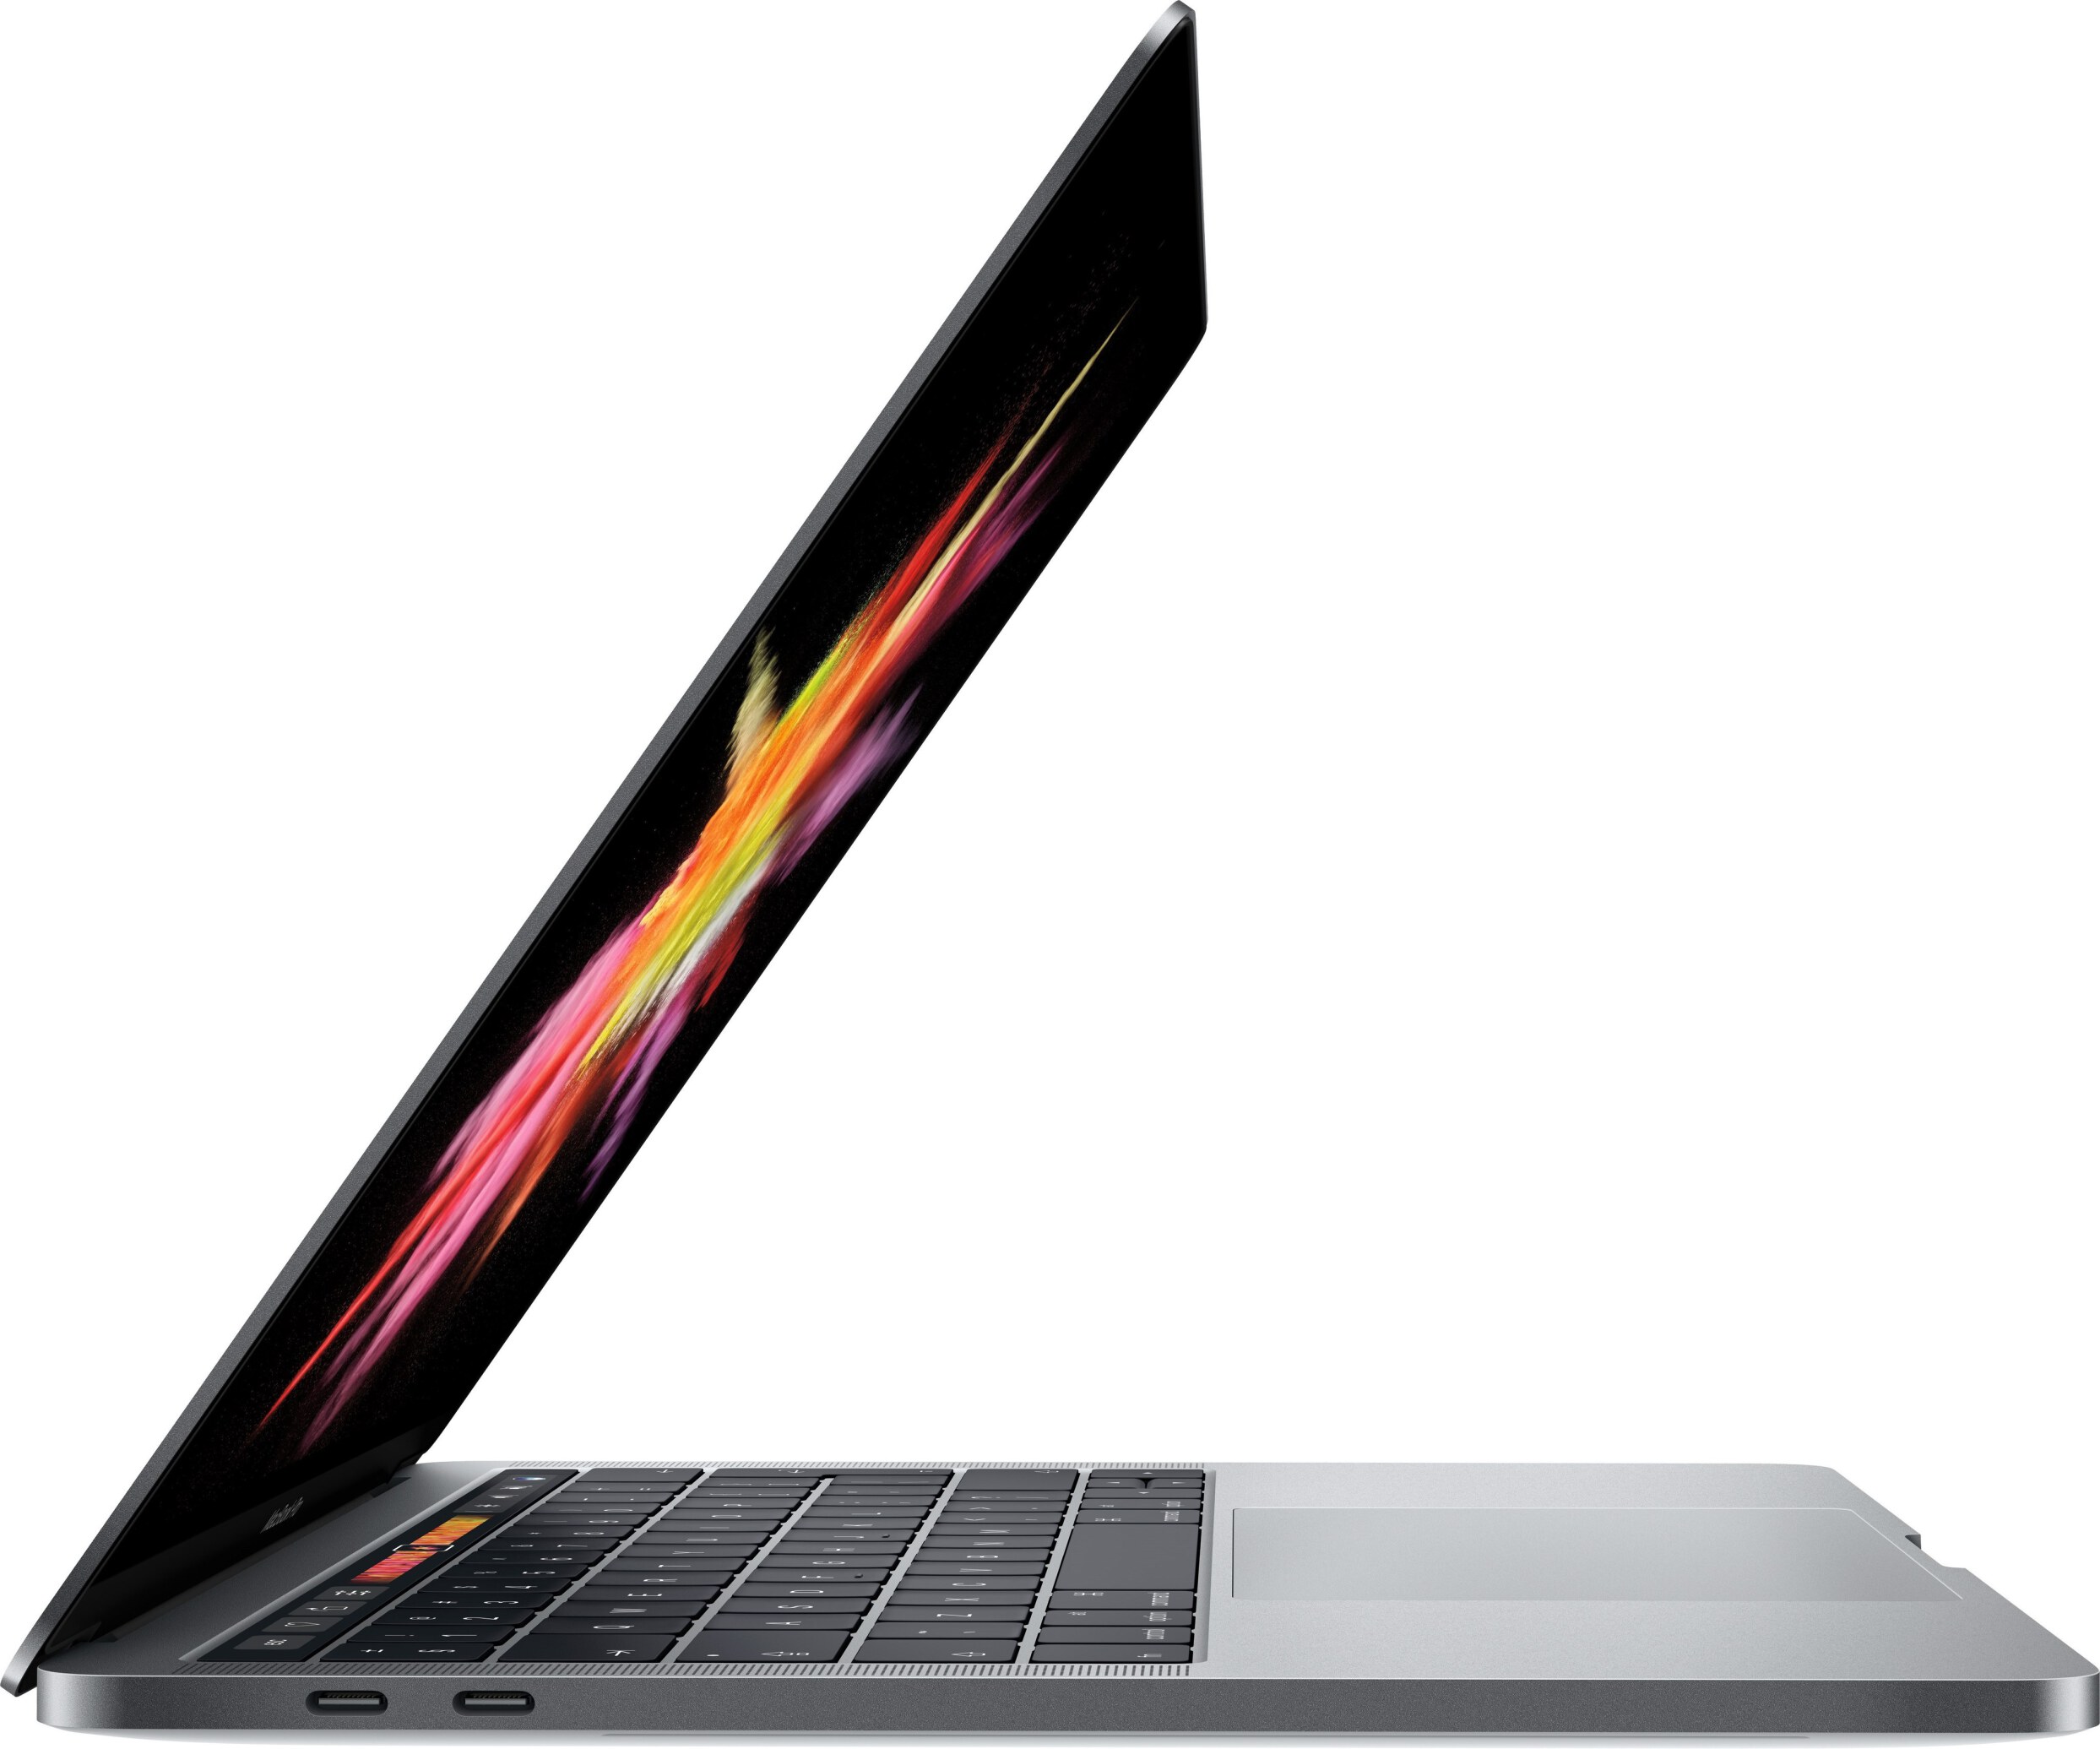  لپ تاپ apple مدل MacBook Pro 2017 Touch Bar | لاکچری لپ تاپ 